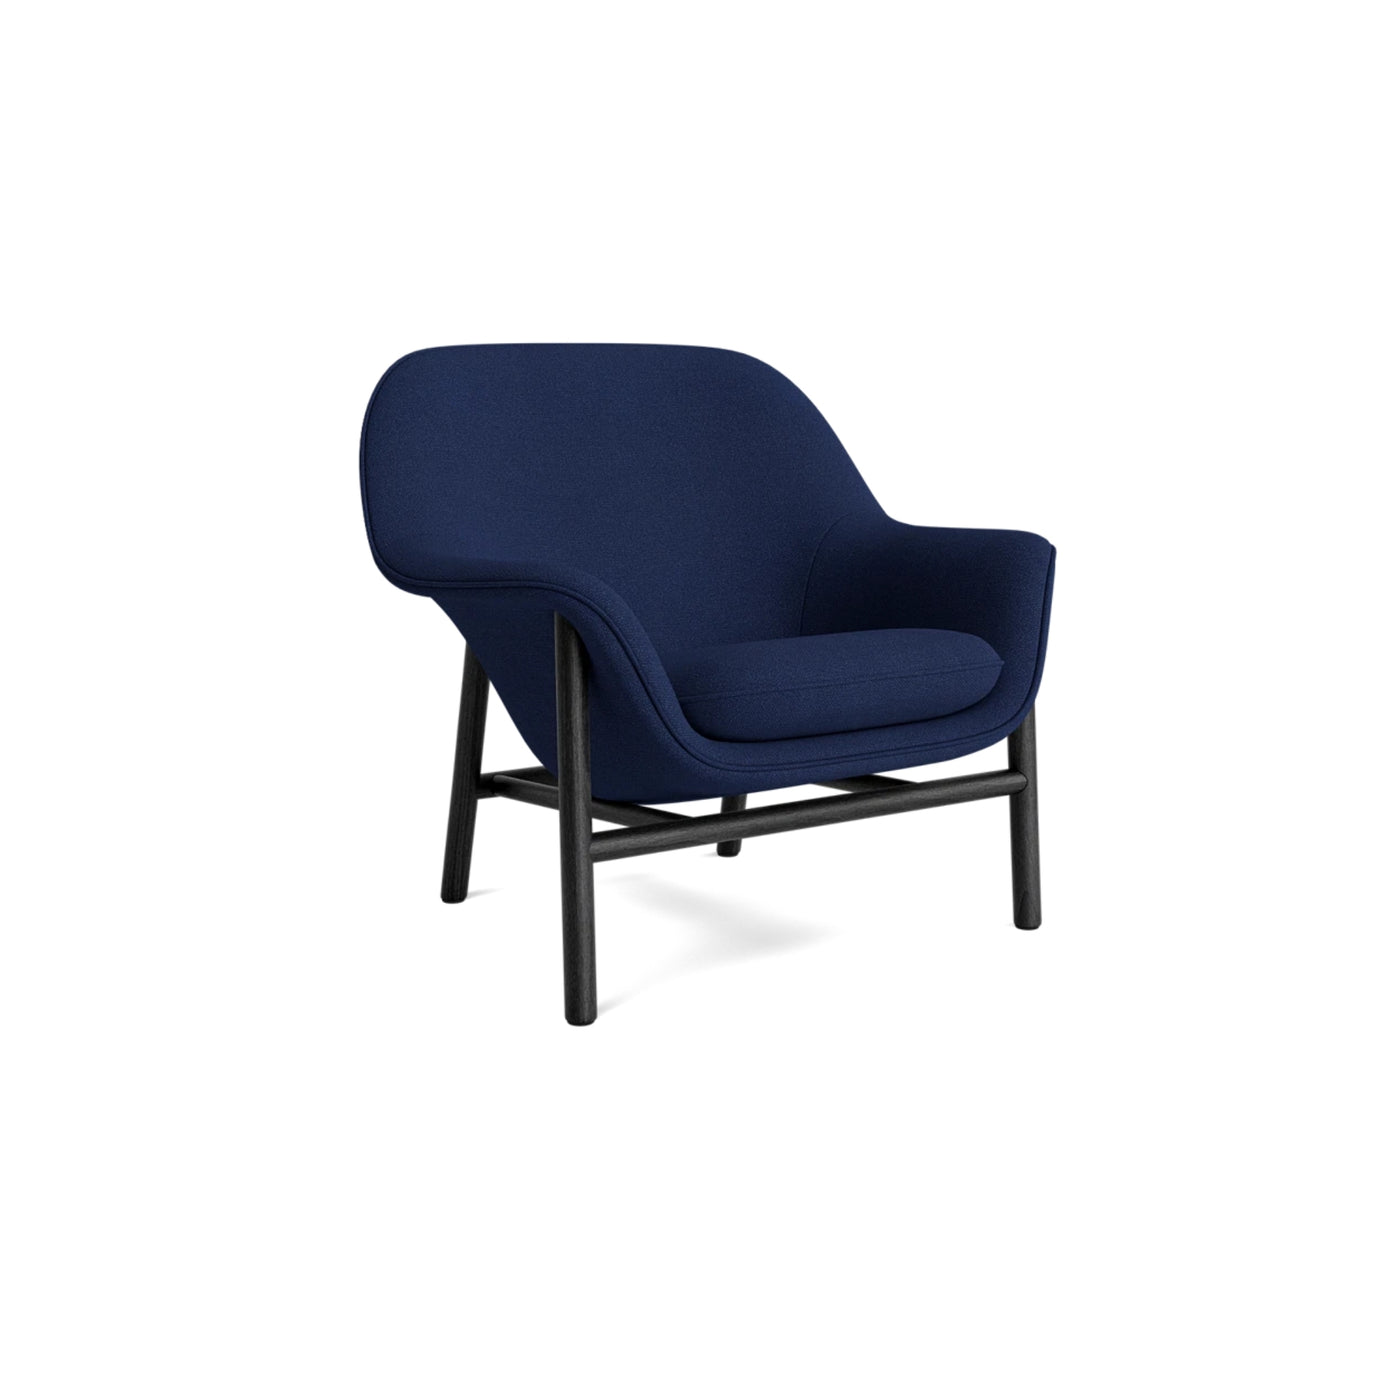 Normann Copenhagen Drape Lounge Chair at someday designs. #colour_hallingdal-764